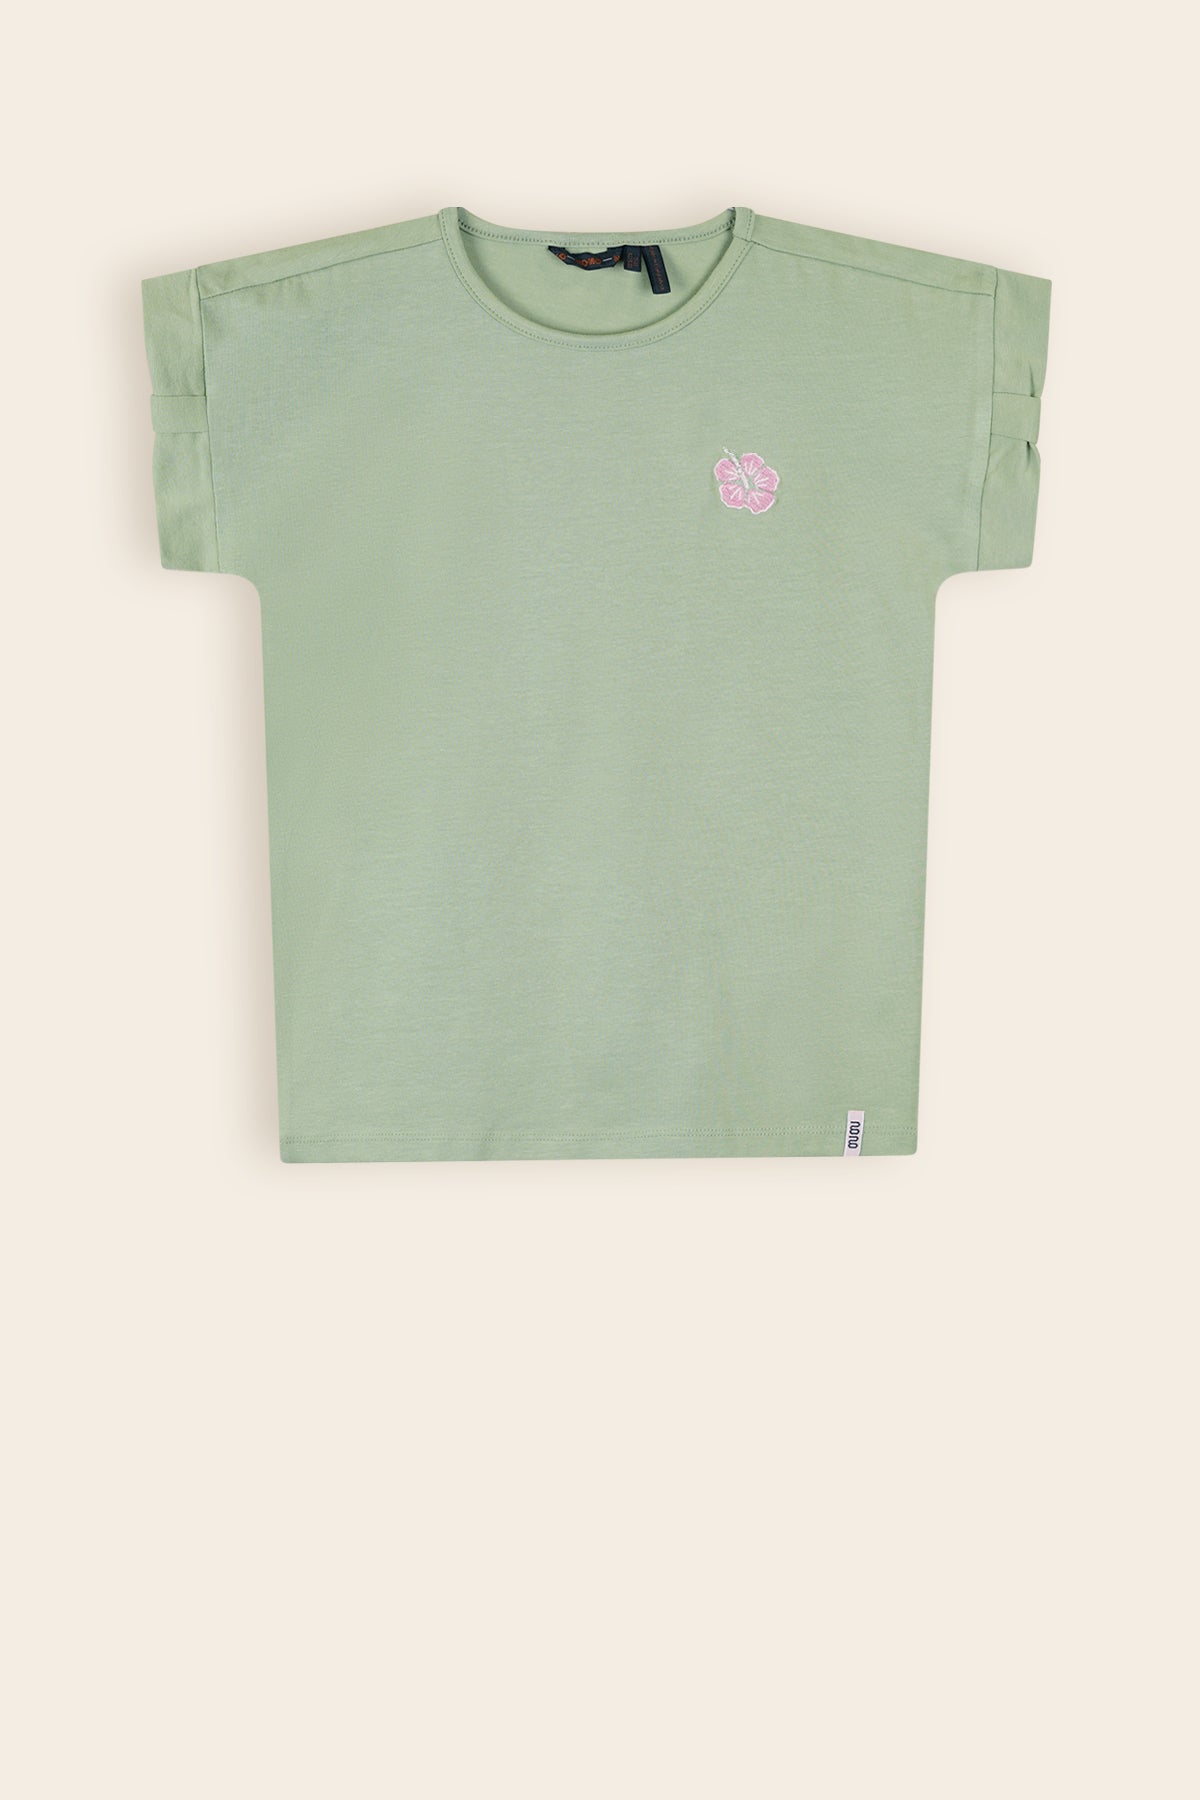 Kamelle T-Shirt Salie Groen